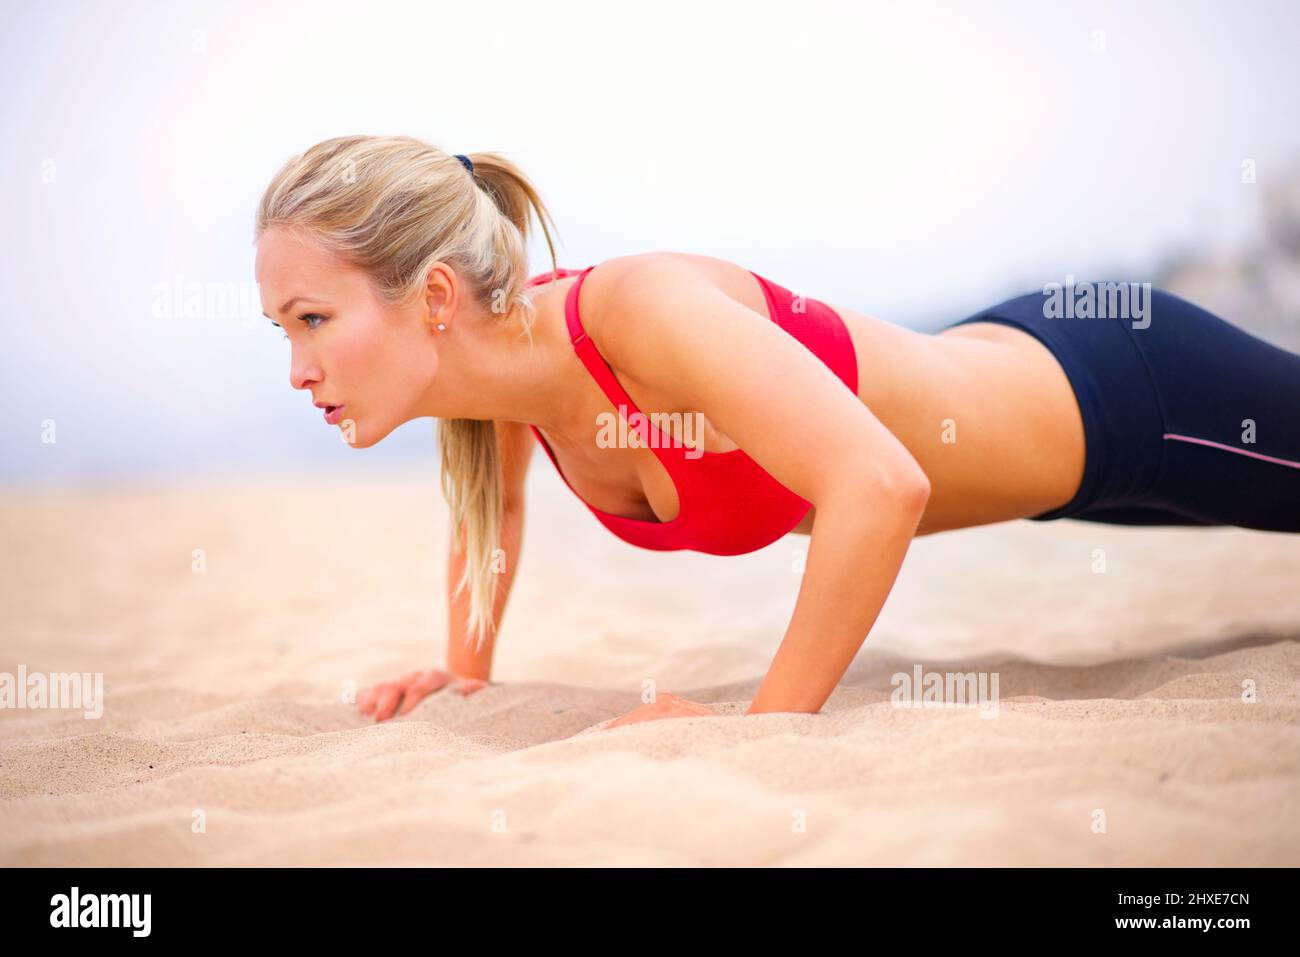 Ganzkörpergesundheit. Aufnahme einer jungen Frau in Sportkleidung, die Liegestütze am Strand macht. Stockfoto